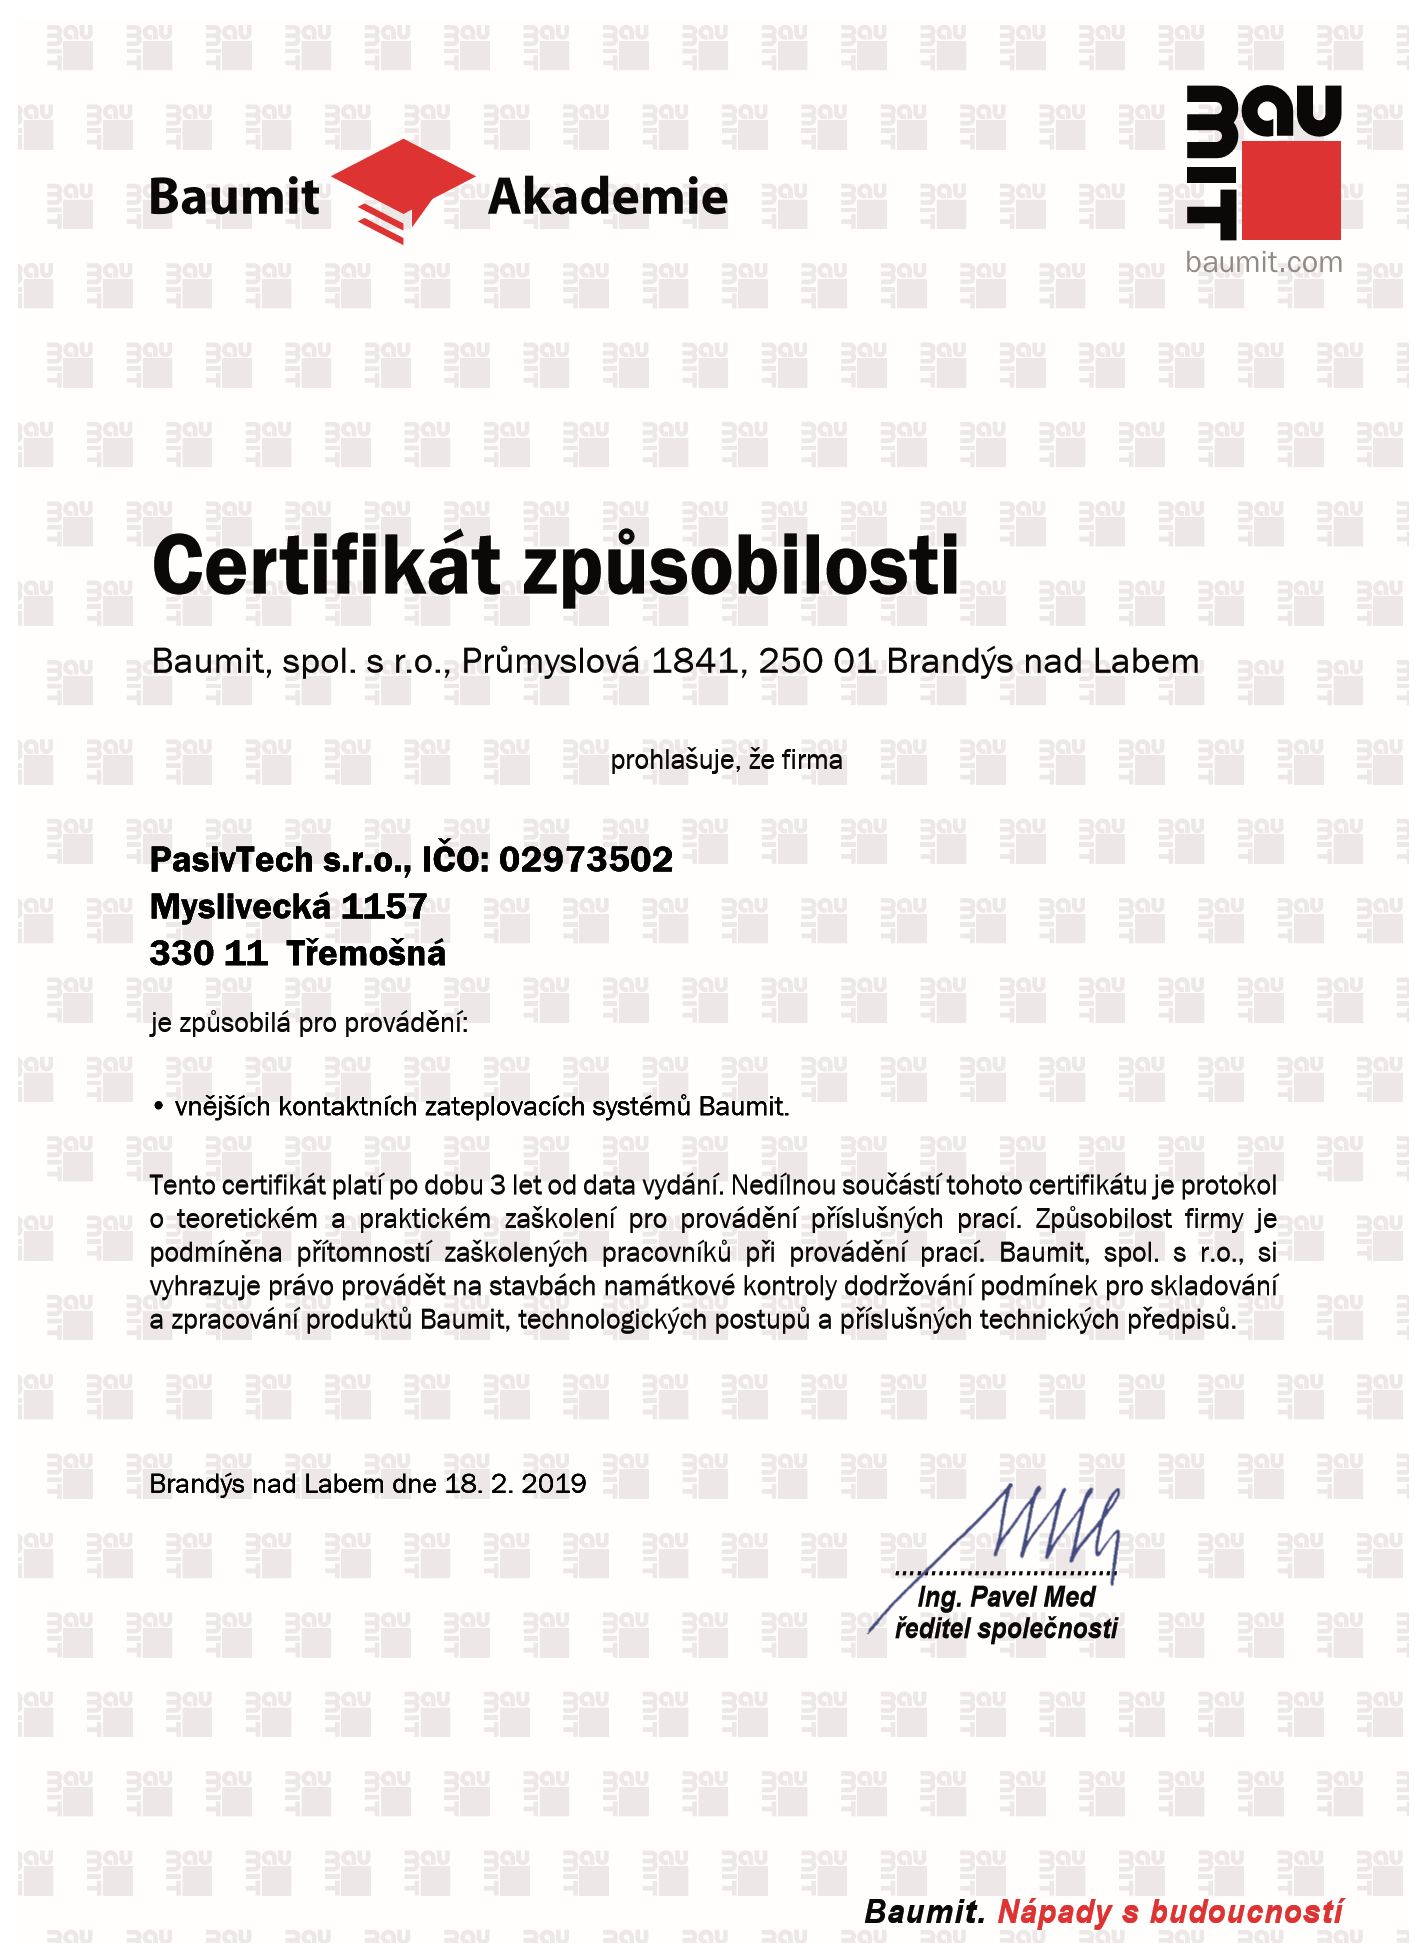 Certifikát způsobilosti instalace zateplovacích systémů